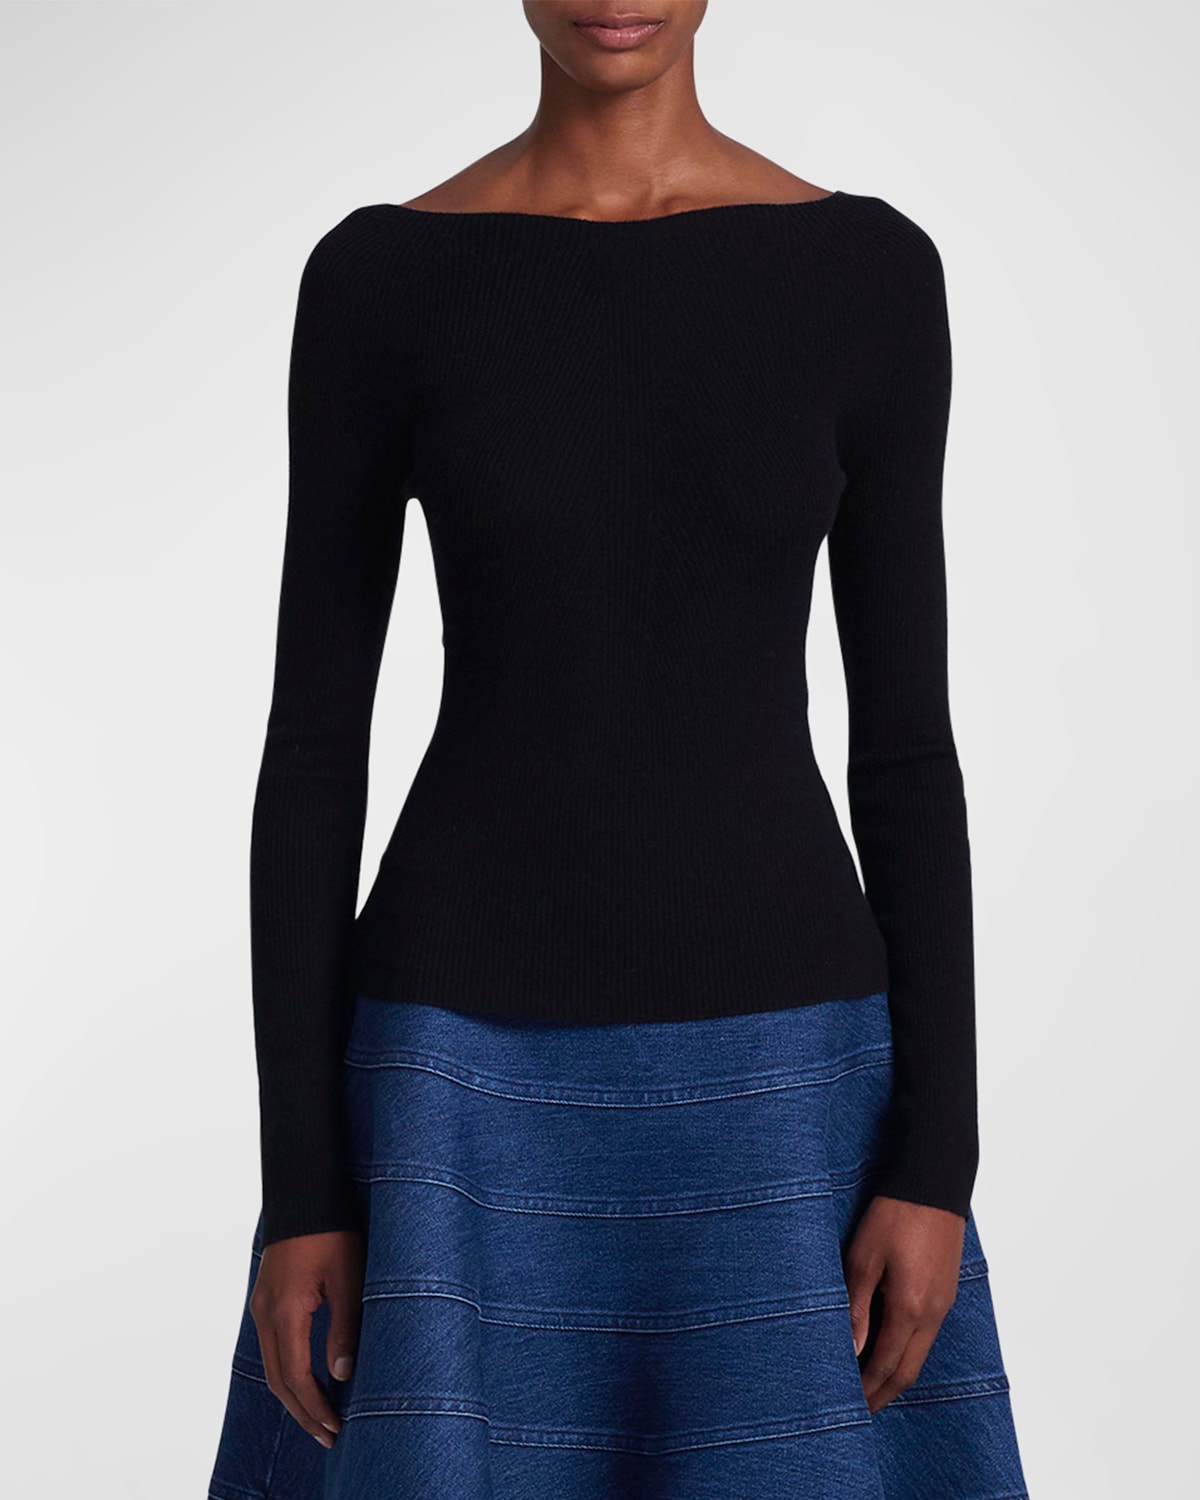 Altuzarra Lee Boat-neck Long-sleeve Cashmere Sweater In Black